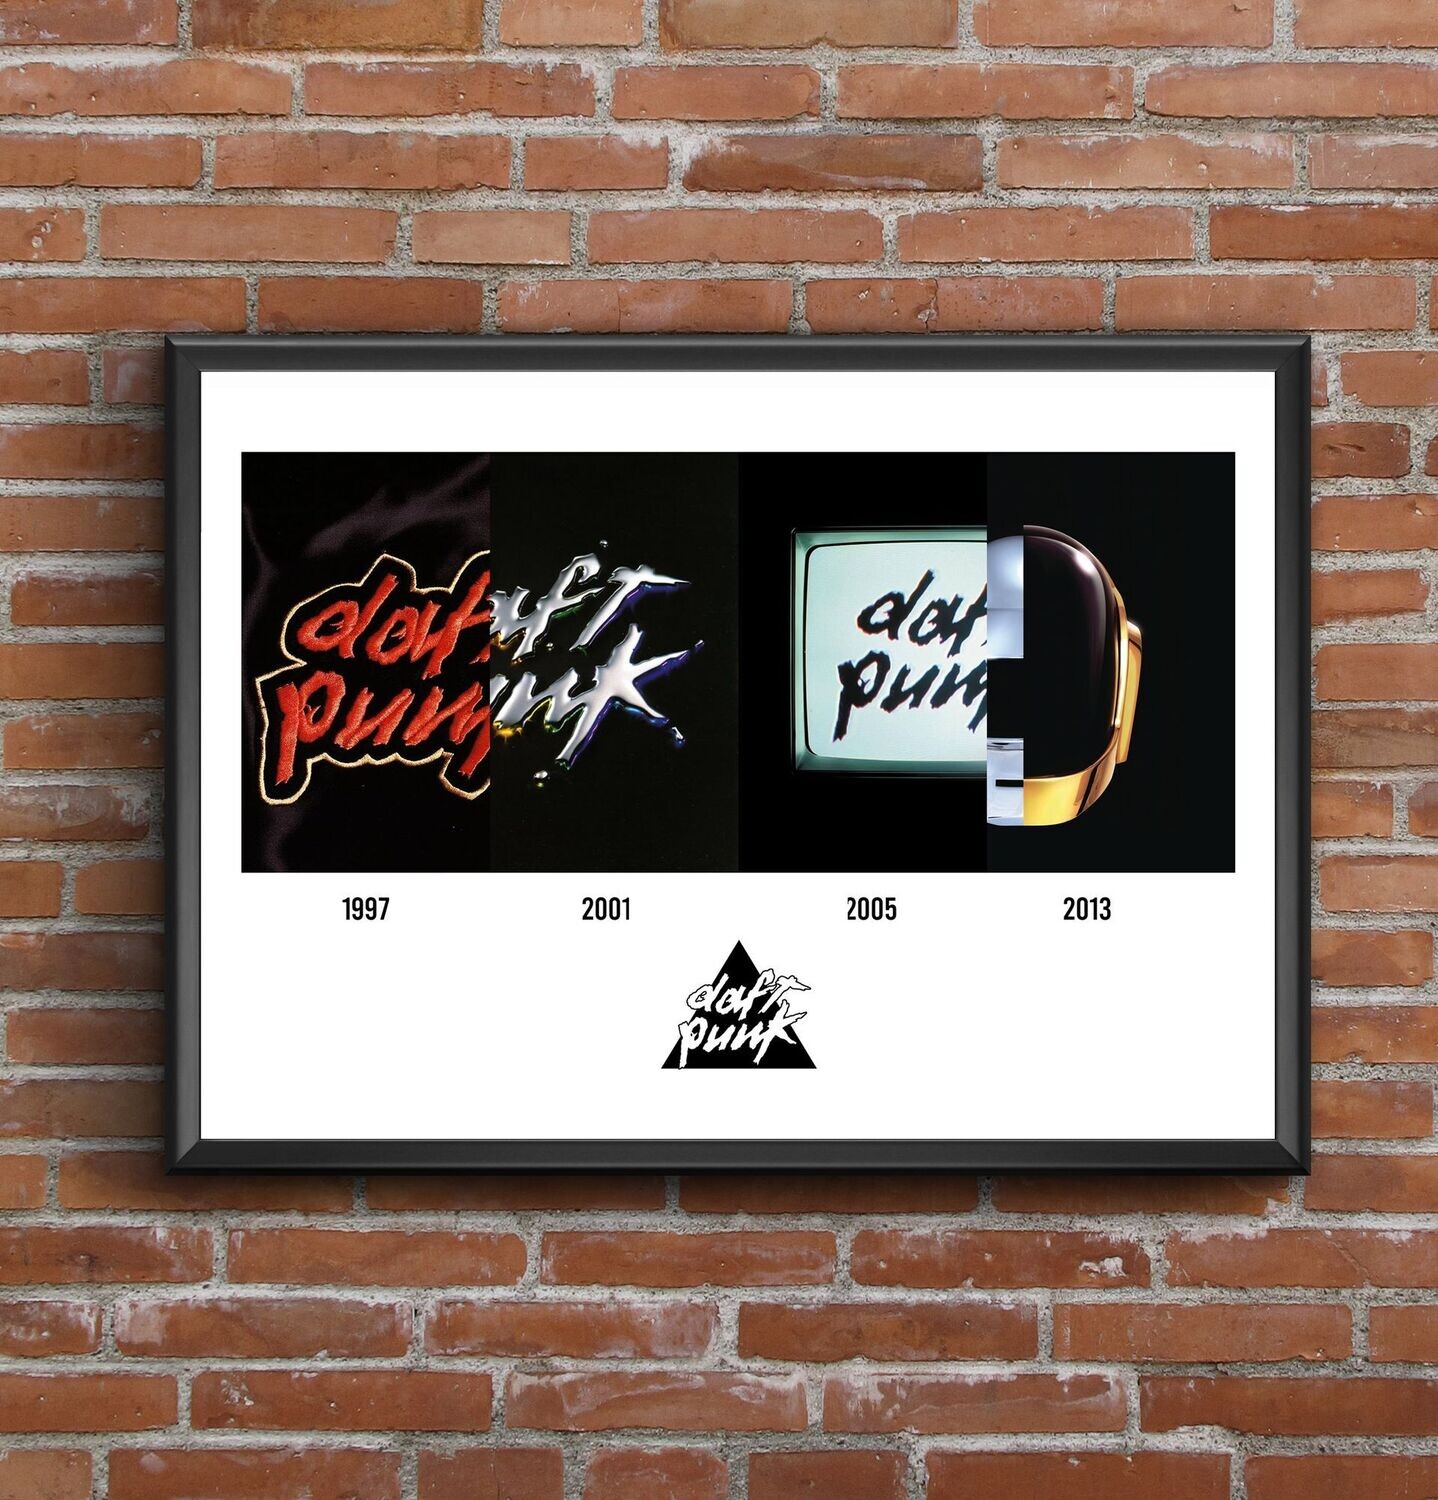 Daft Punk Discography